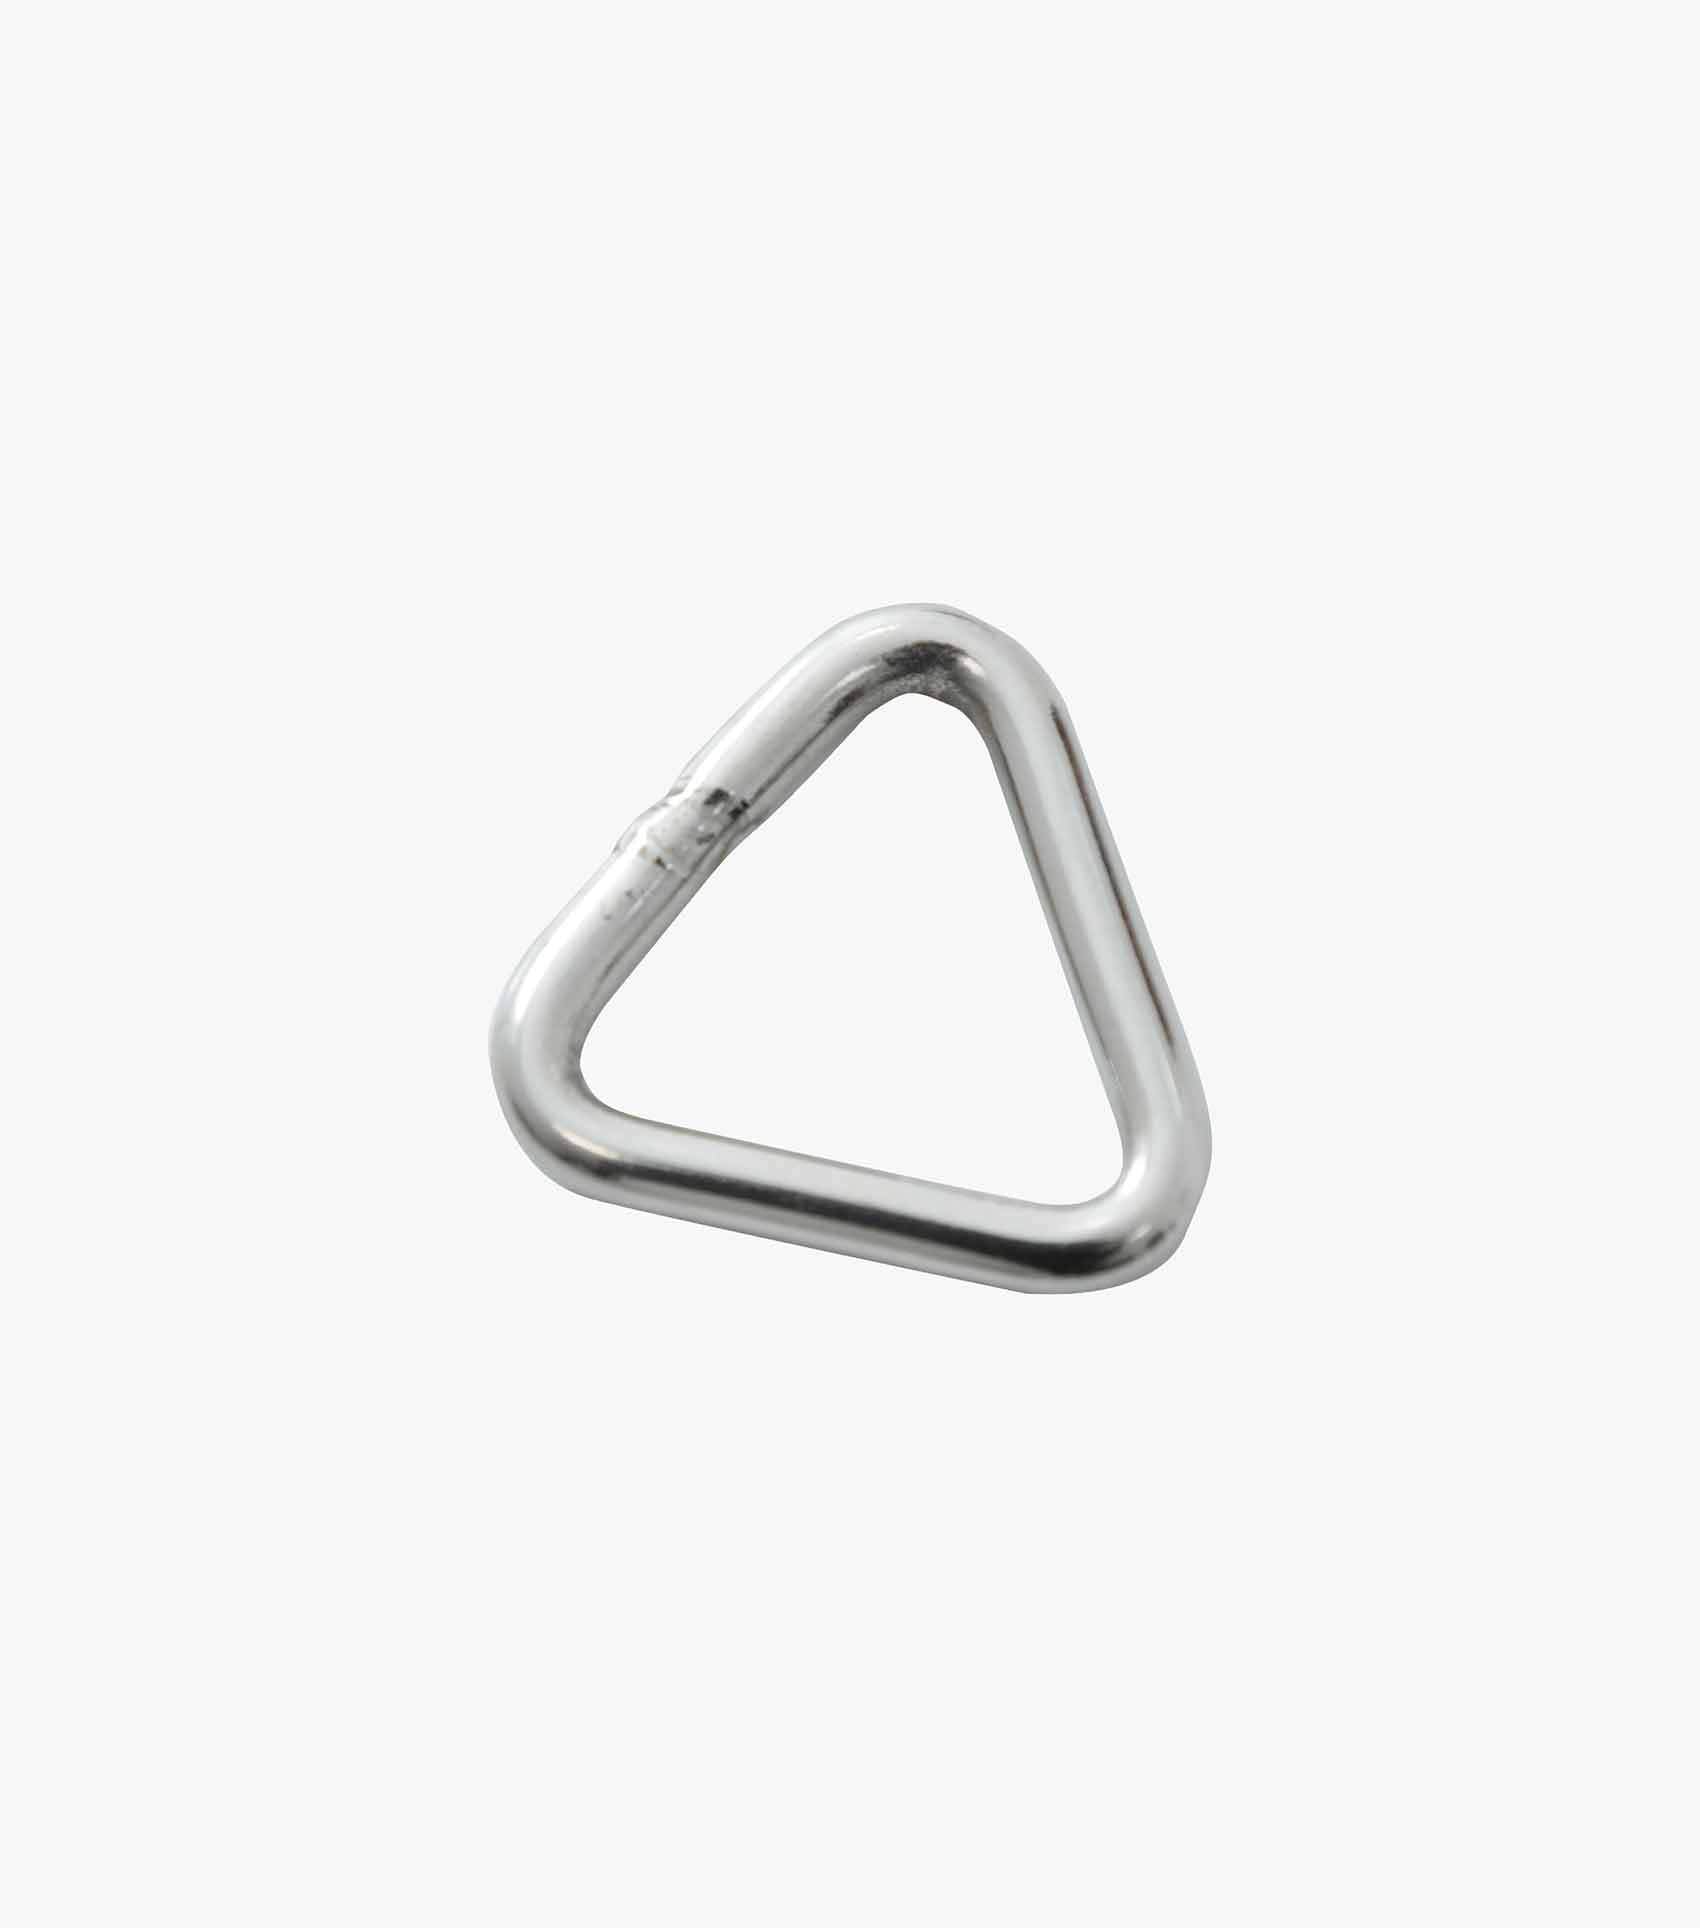 Description:Triangle Ring